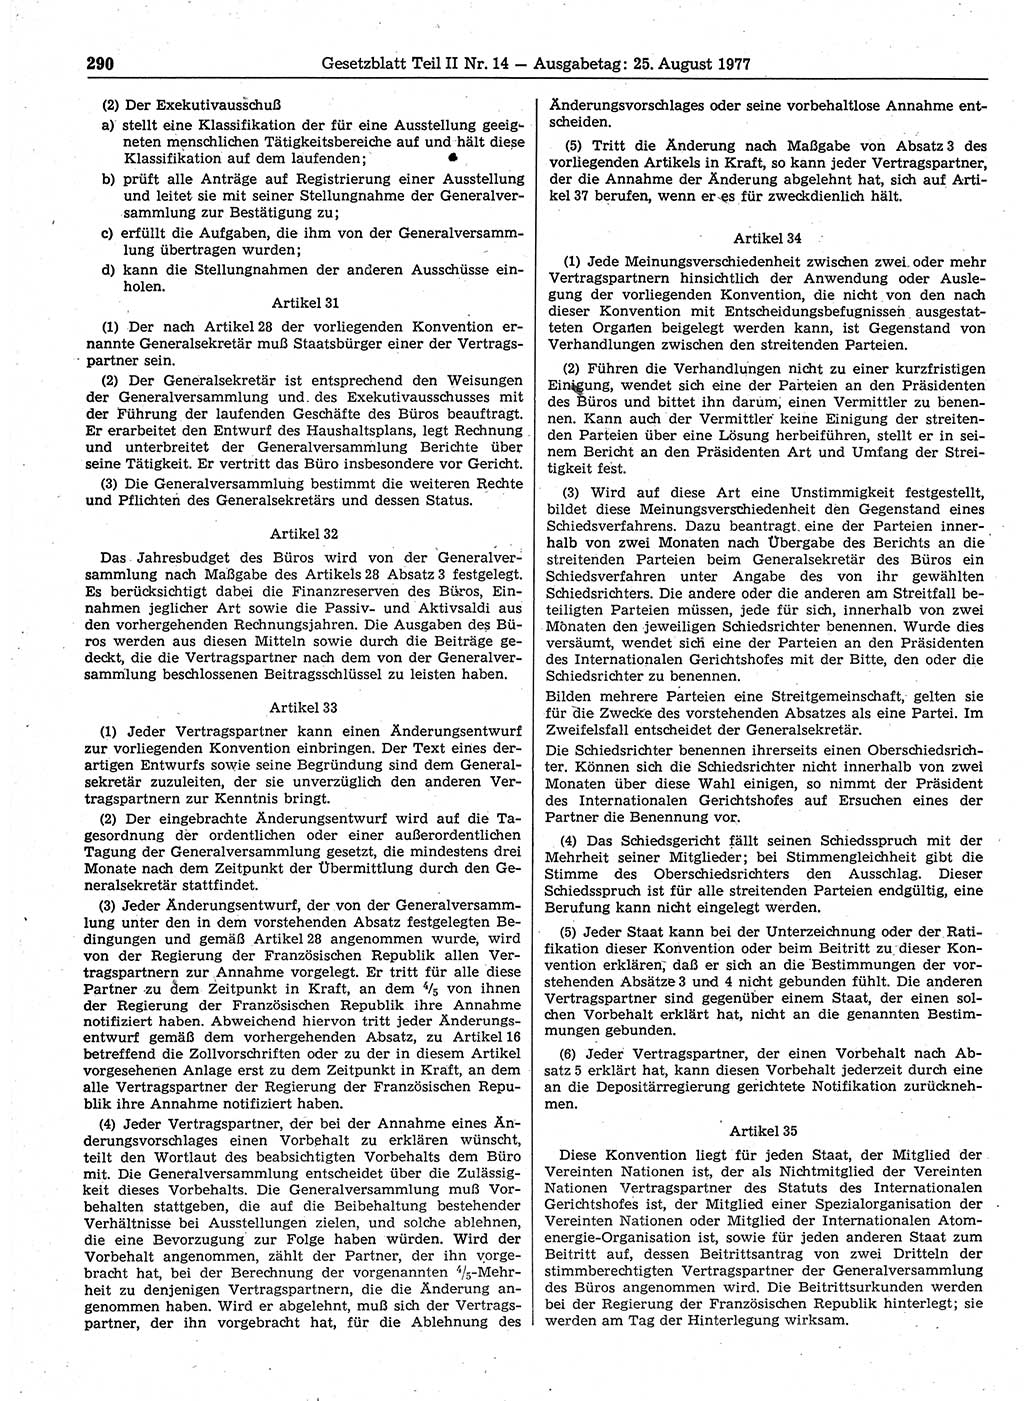 Gesetzblatt (GBl.) der Deutschen Demokratischen Republik (DDR) Teil ⅠⅠ 1977, Seite 290 (GBl. DDR ⅠⅠ 1977, S. 290)